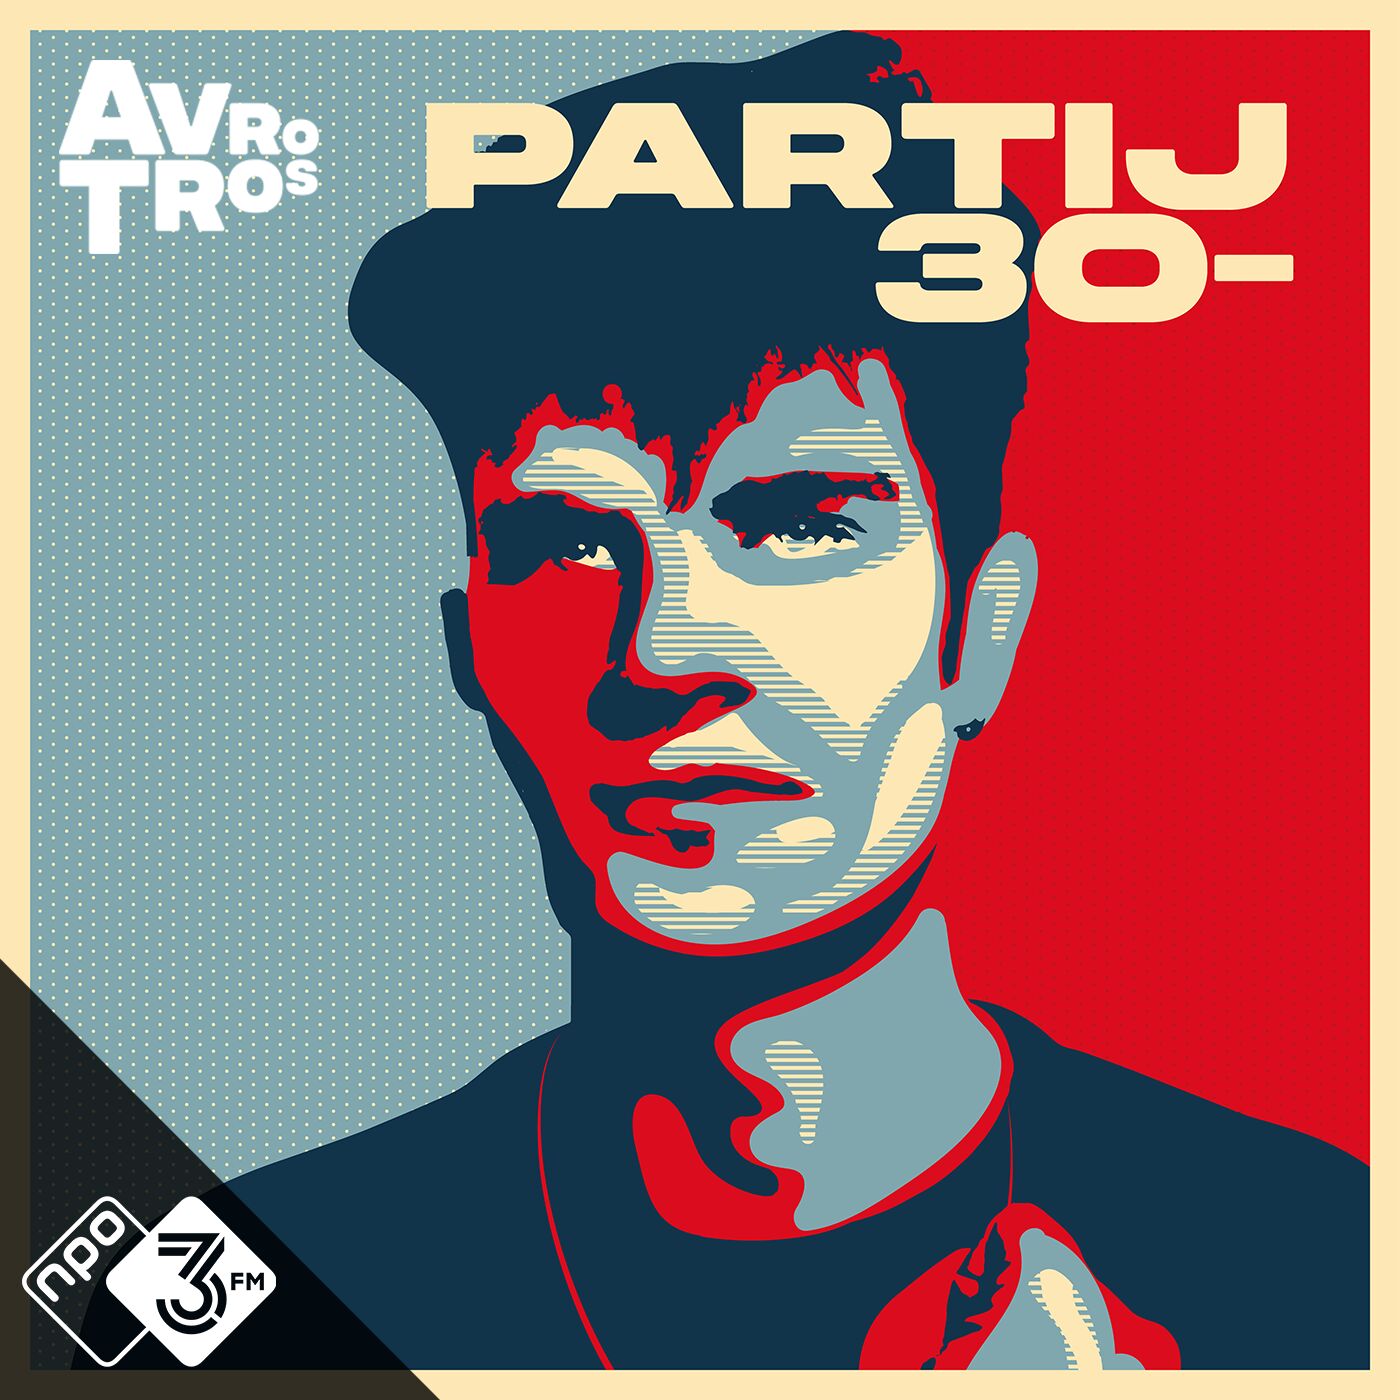 Partij 30- logo